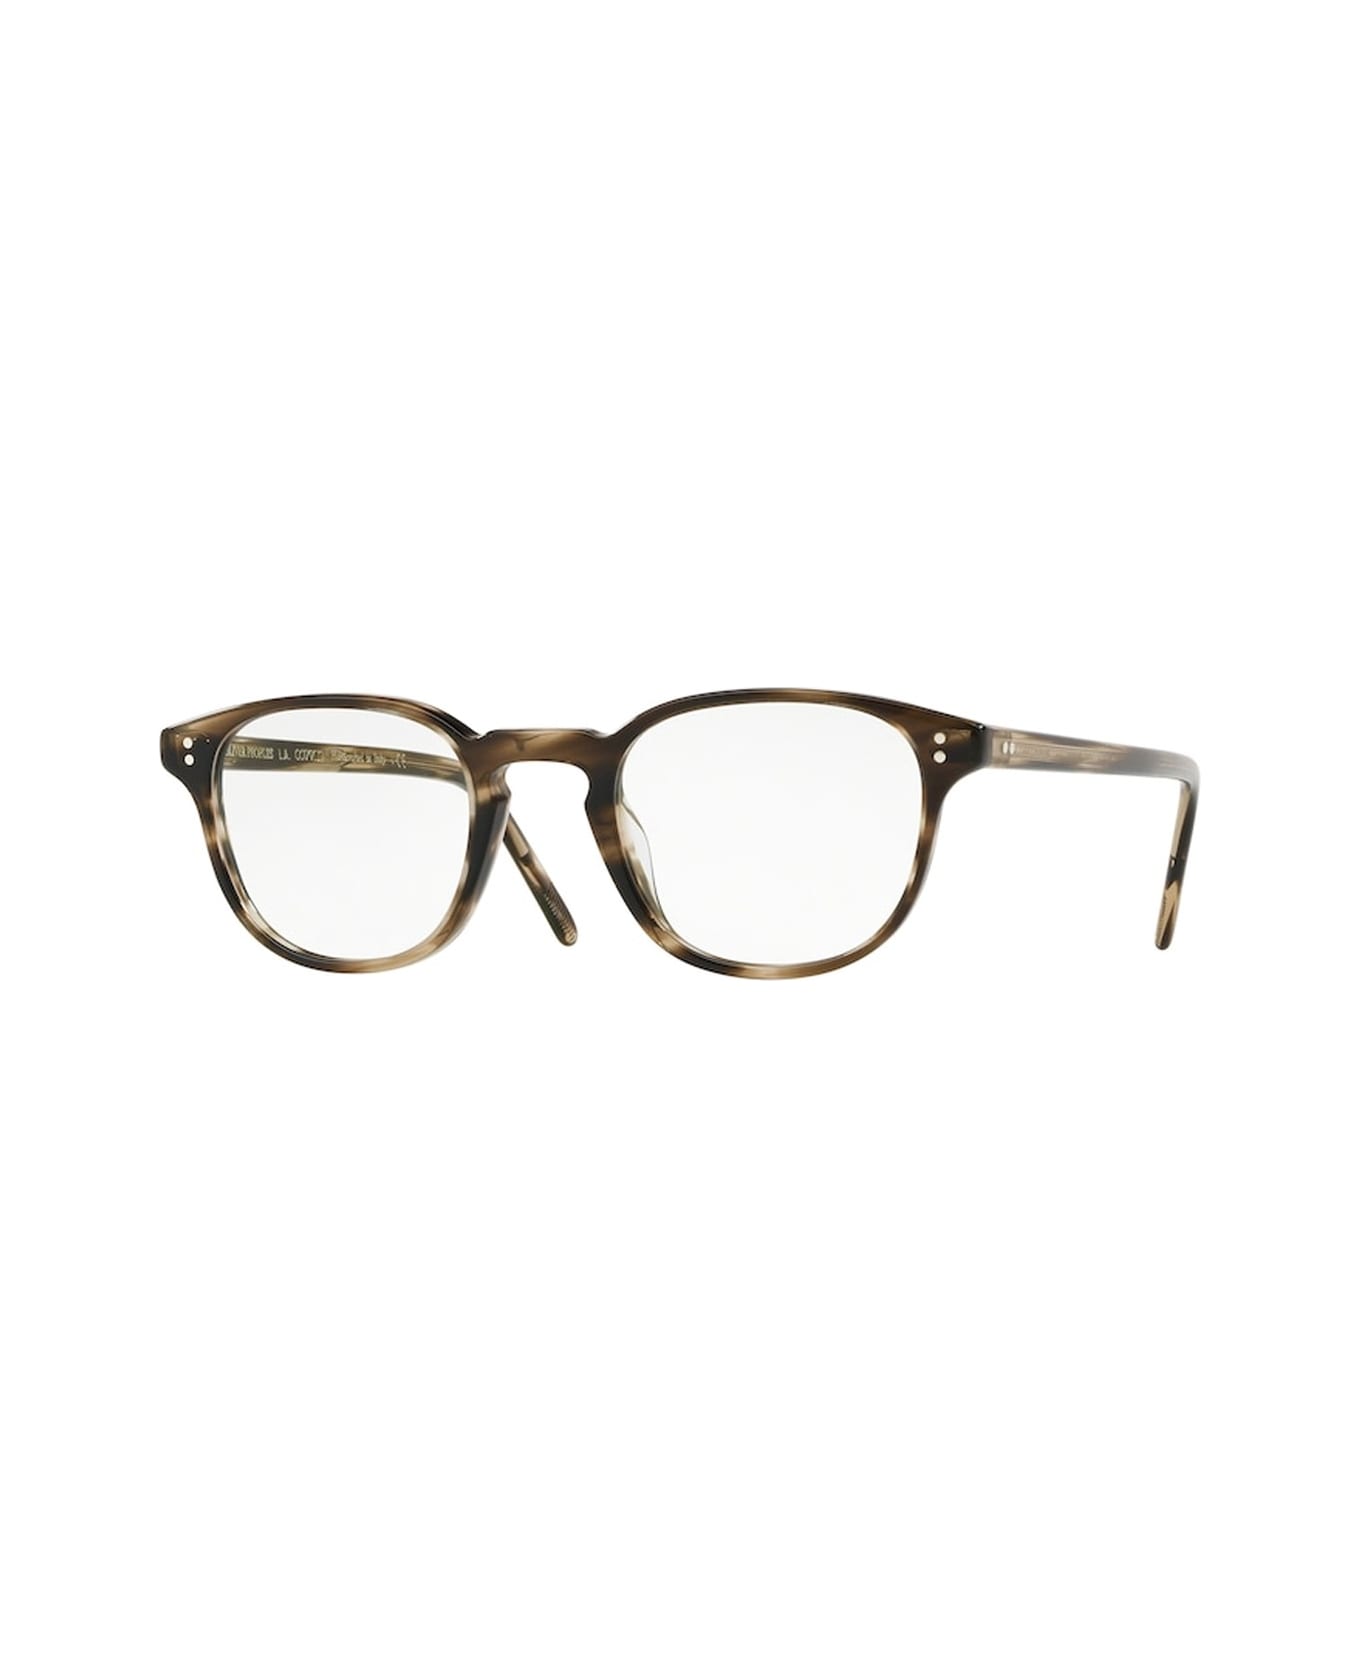 Oliver Peoples Ov5219 Glasses - Marrone アイウェア